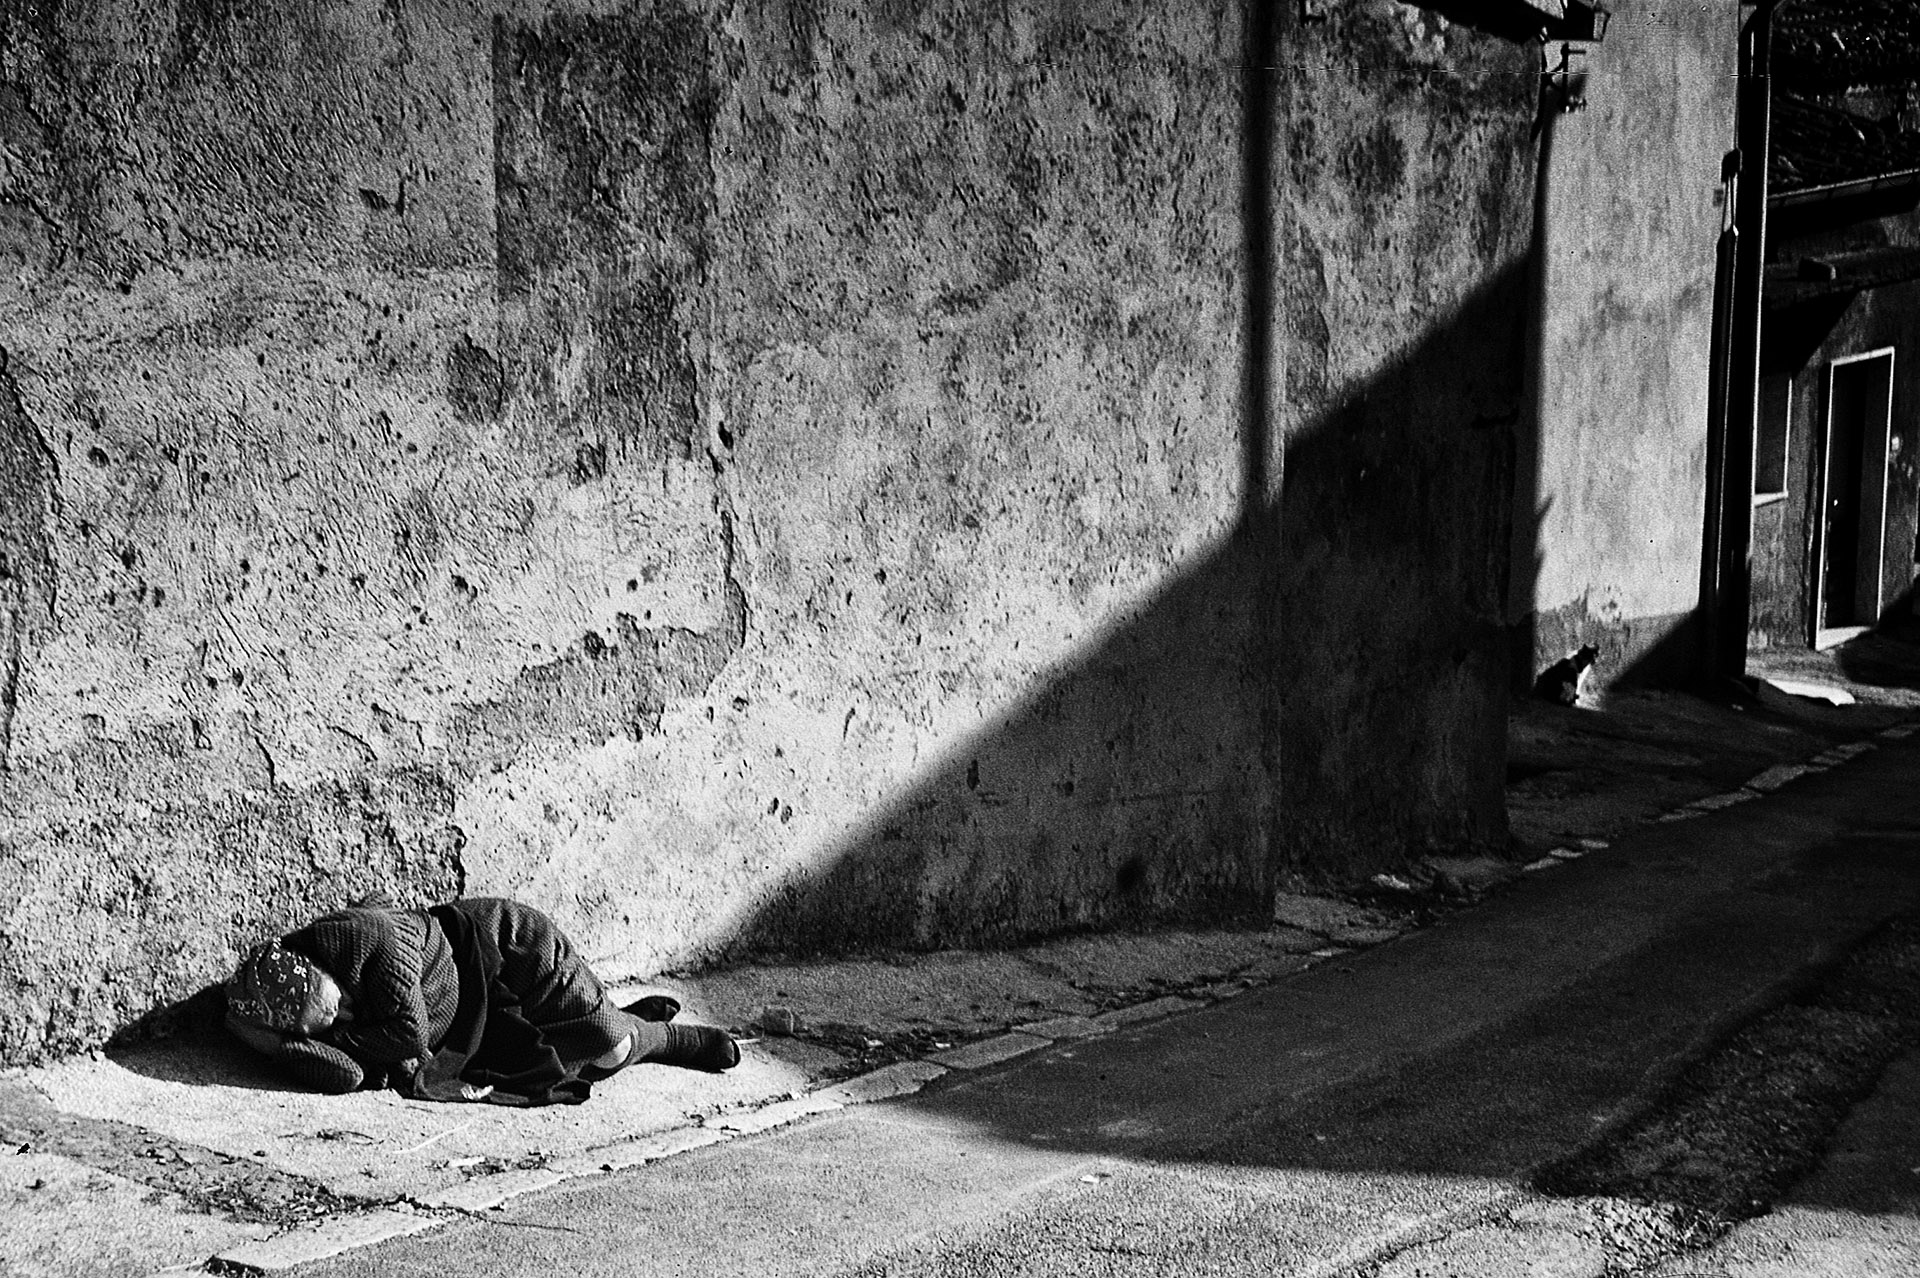 anziana-che-dorrme-in-strada